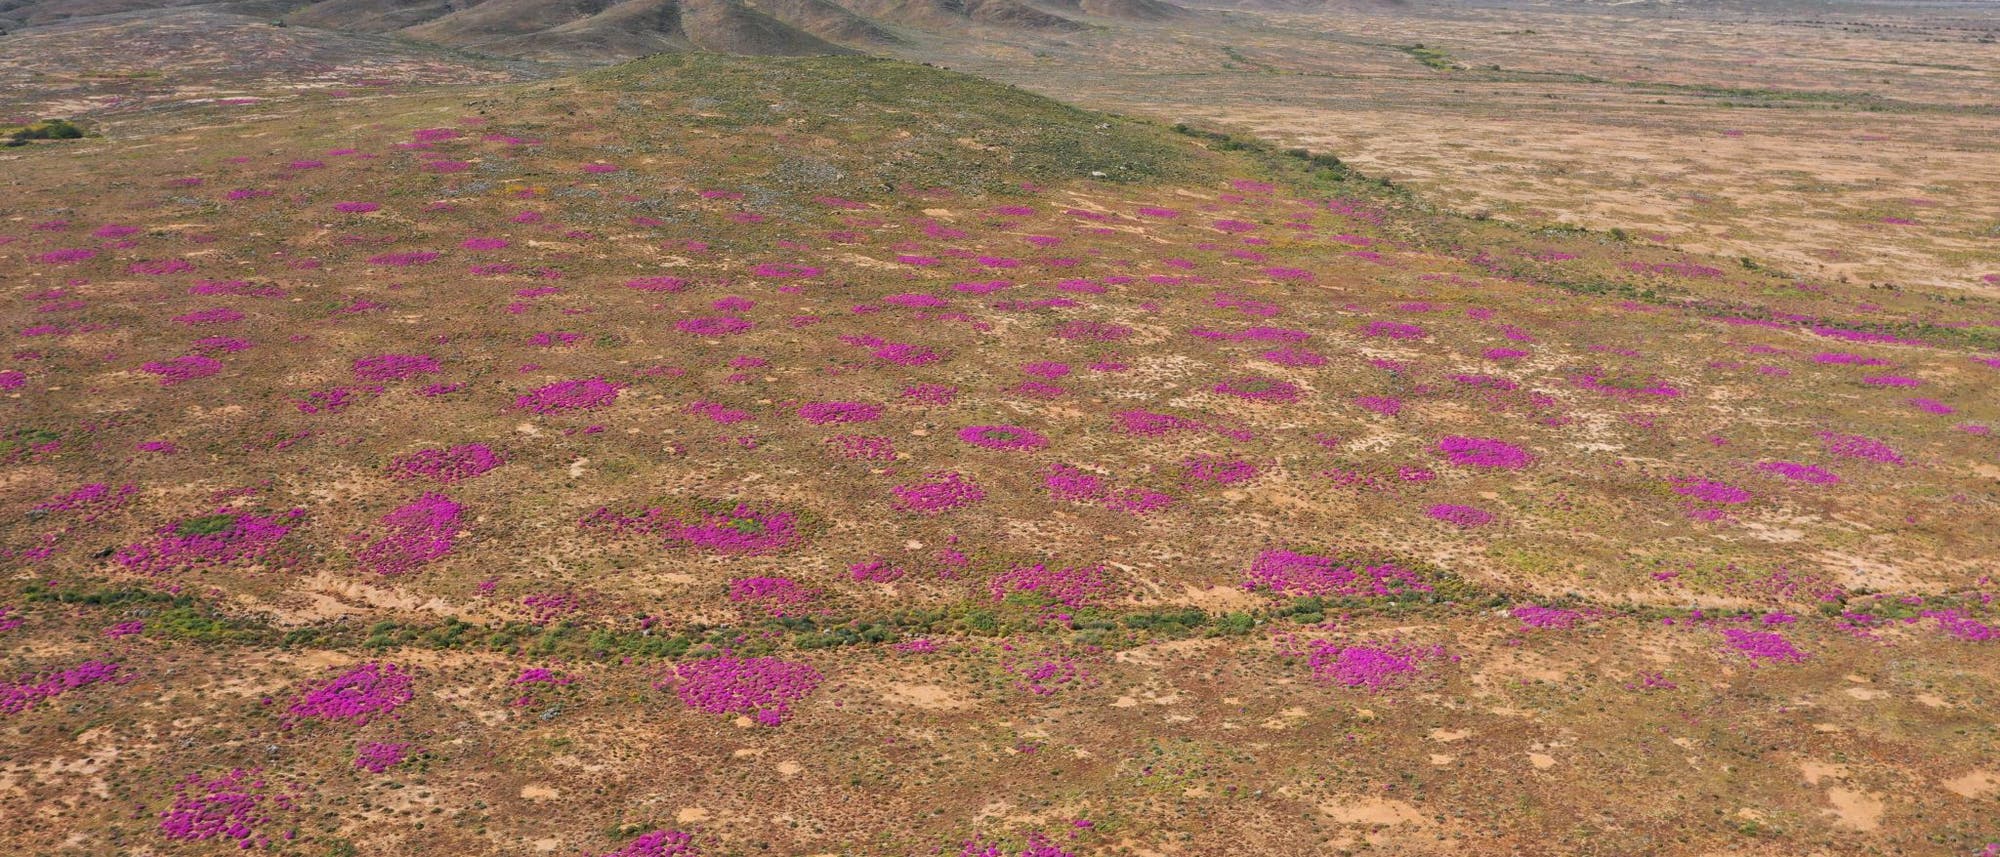 Pinke Flecken im wüstenhaften Braun der Landschaft im Namaqualand deuten an, dass hier Termitenhügel sind.